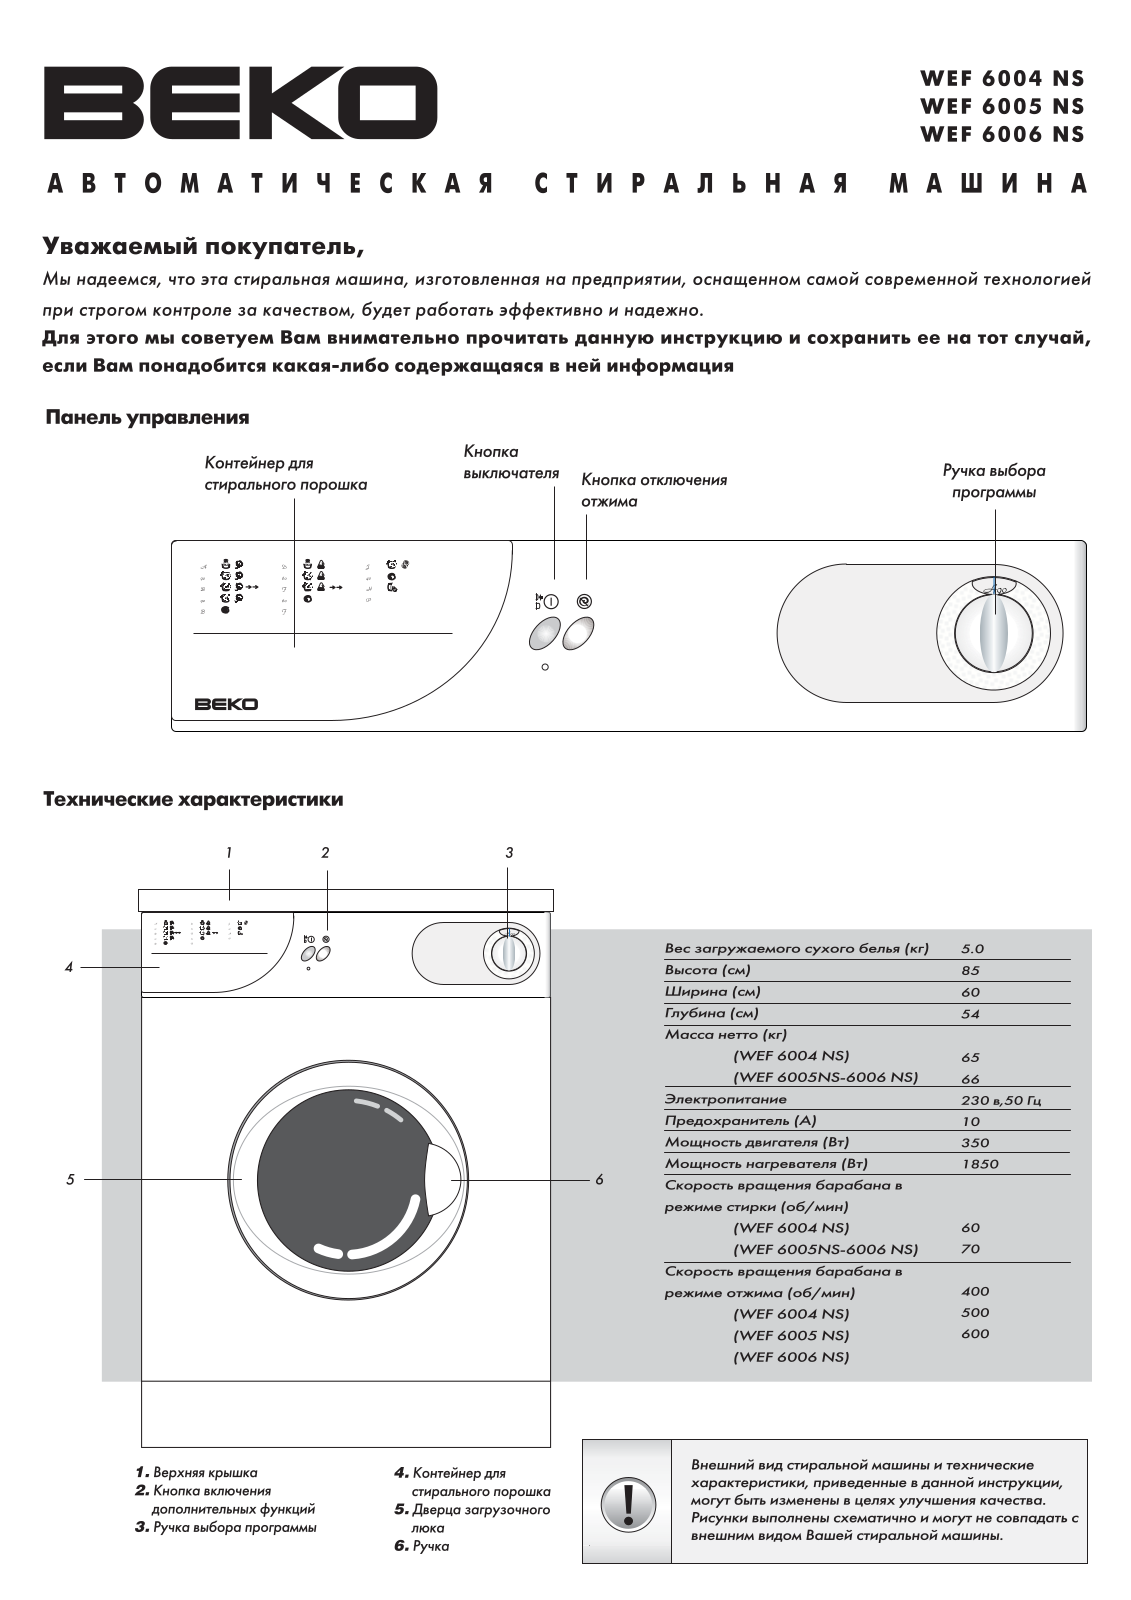 Beko WEF 6006 NS User Manual